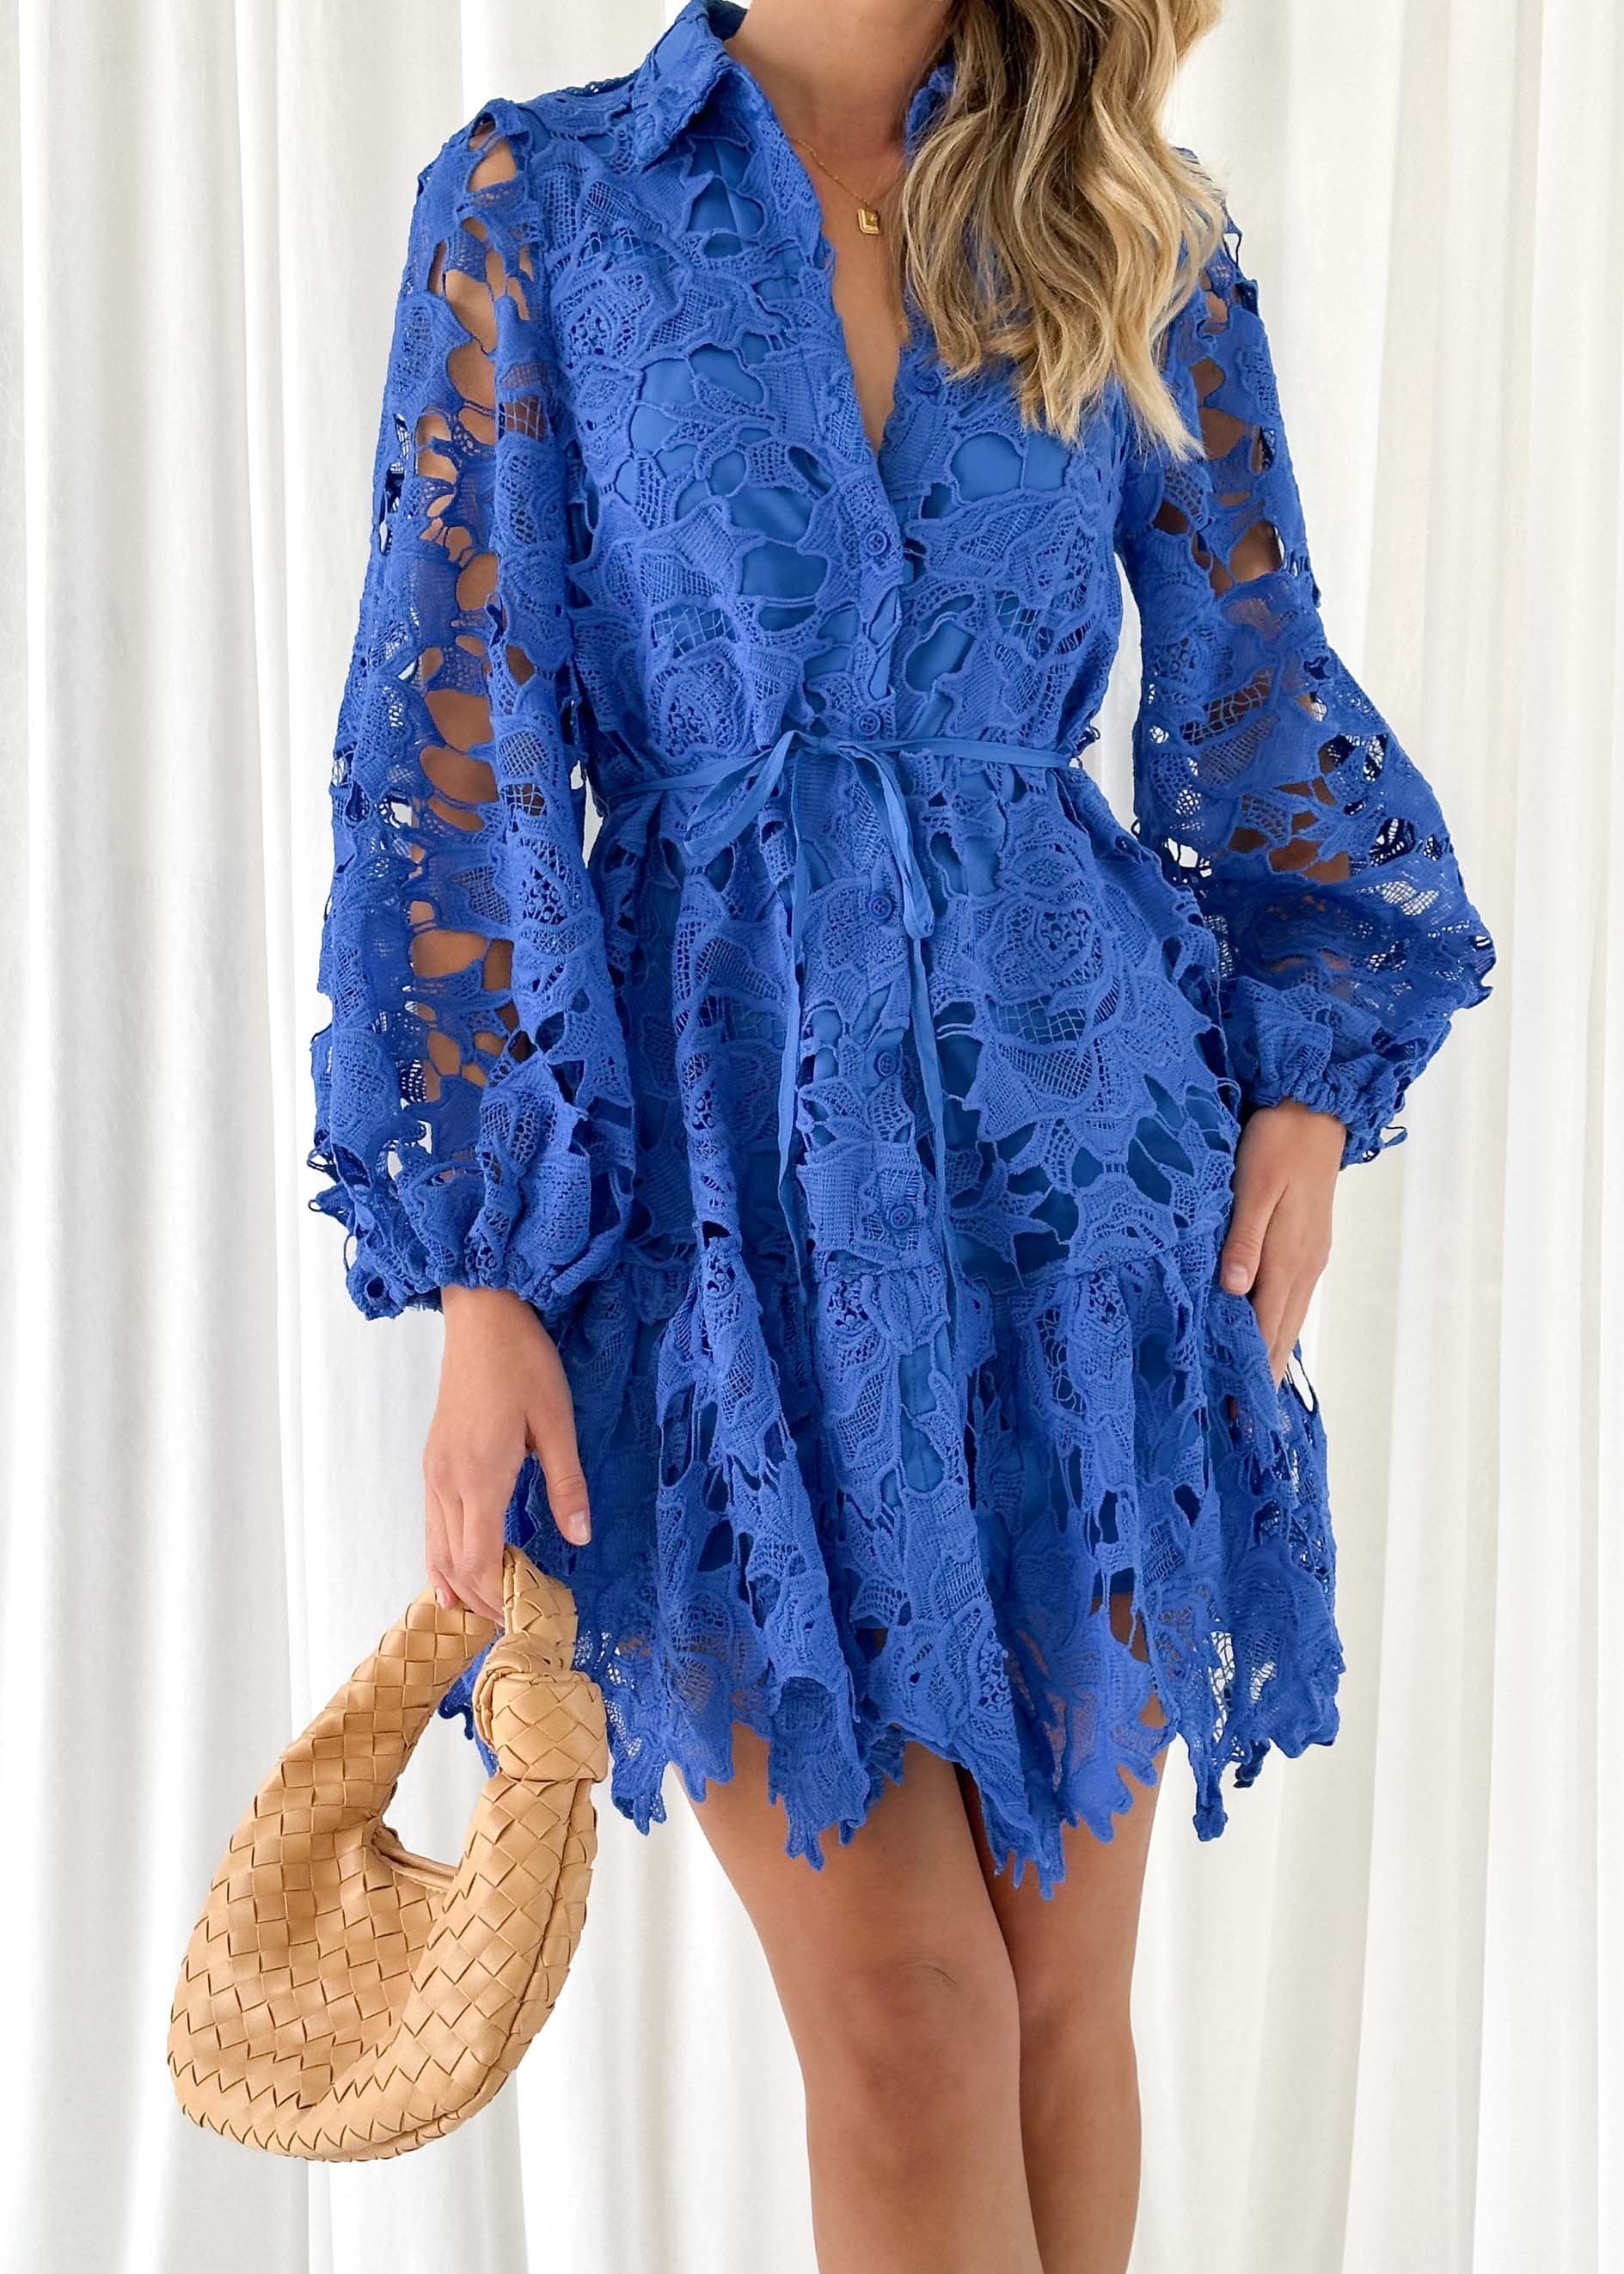 Gillion Dress - Cobalt Lace